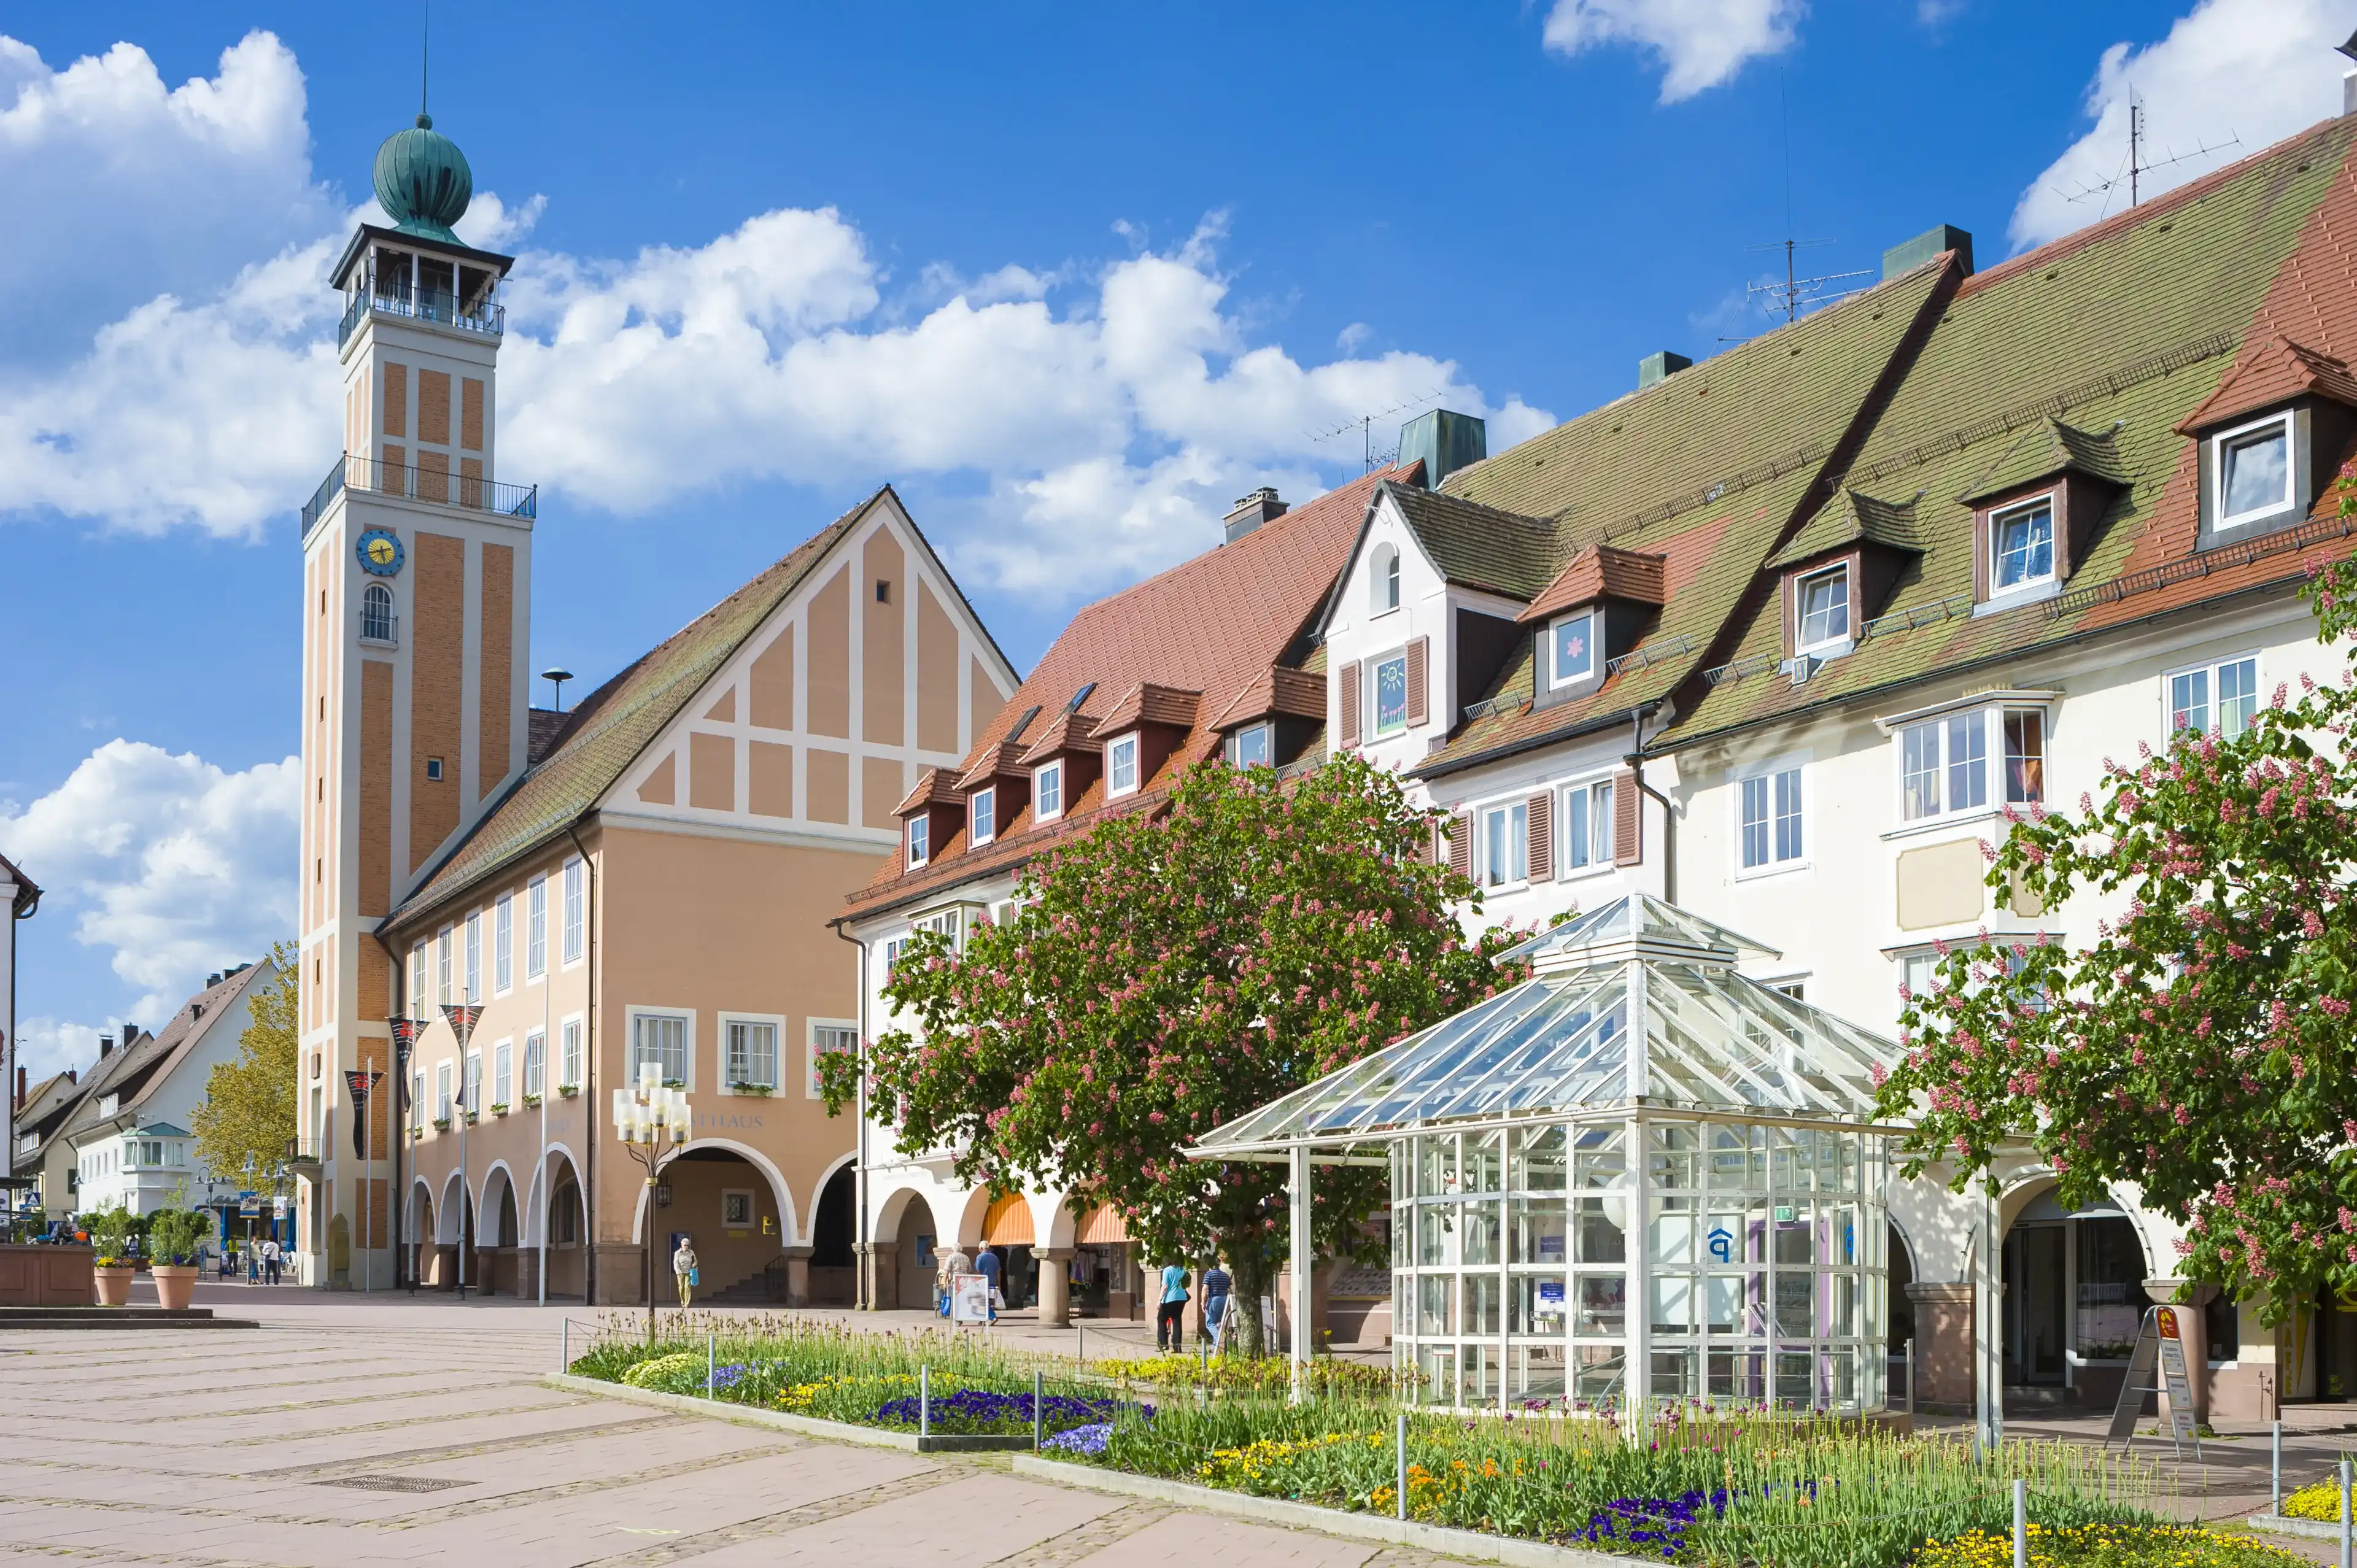 Best Freudenstadt hotels. Cheap hotels in Freudenstadt, Germany